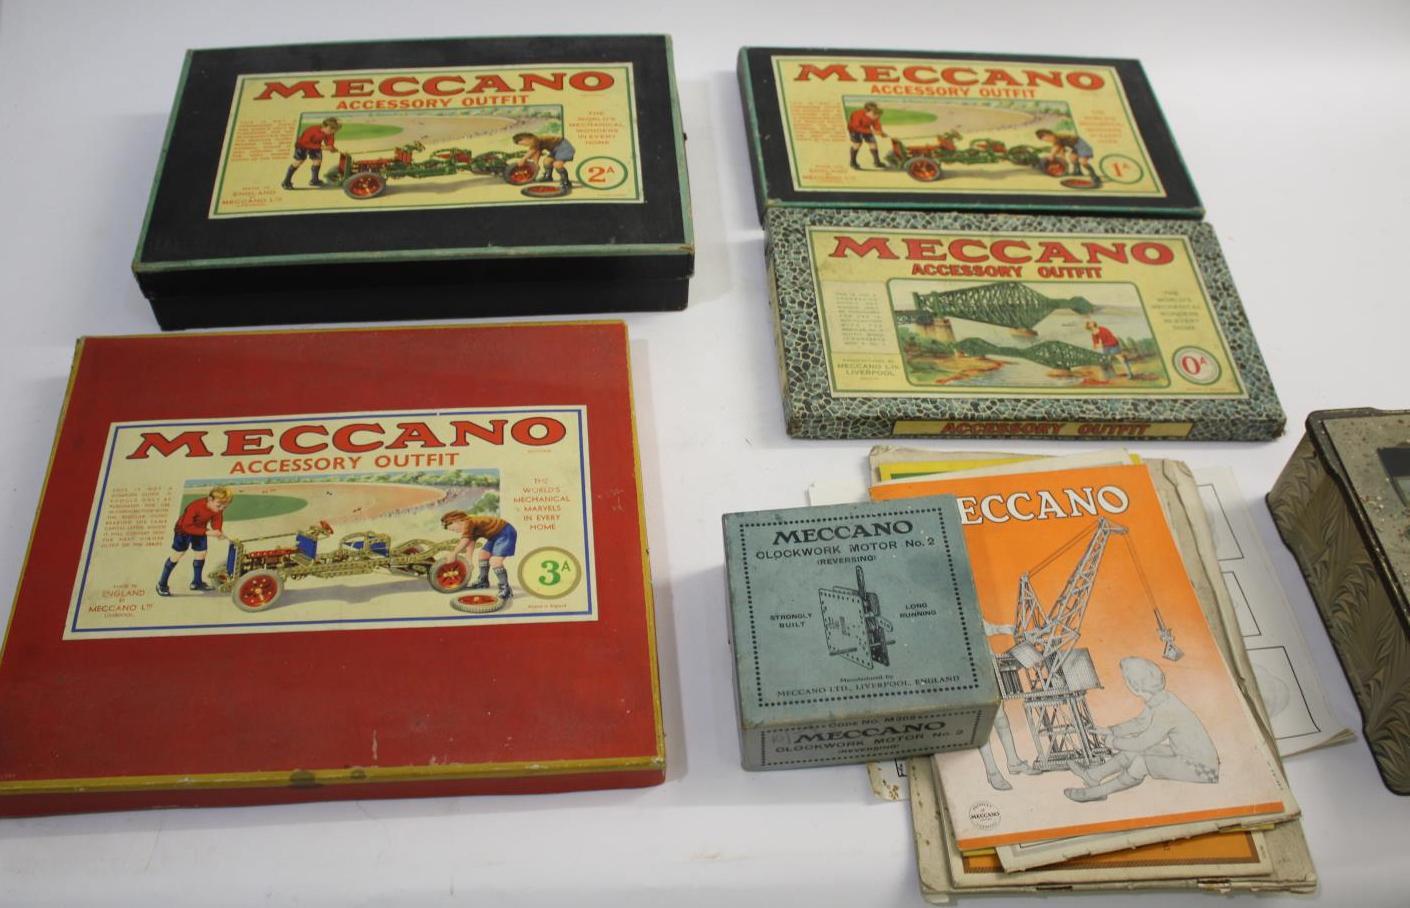 MECCANO BOXED SETS including Meccano Accessory Outfit 2A, Meccano Accessory Outfit 1A, Accessory